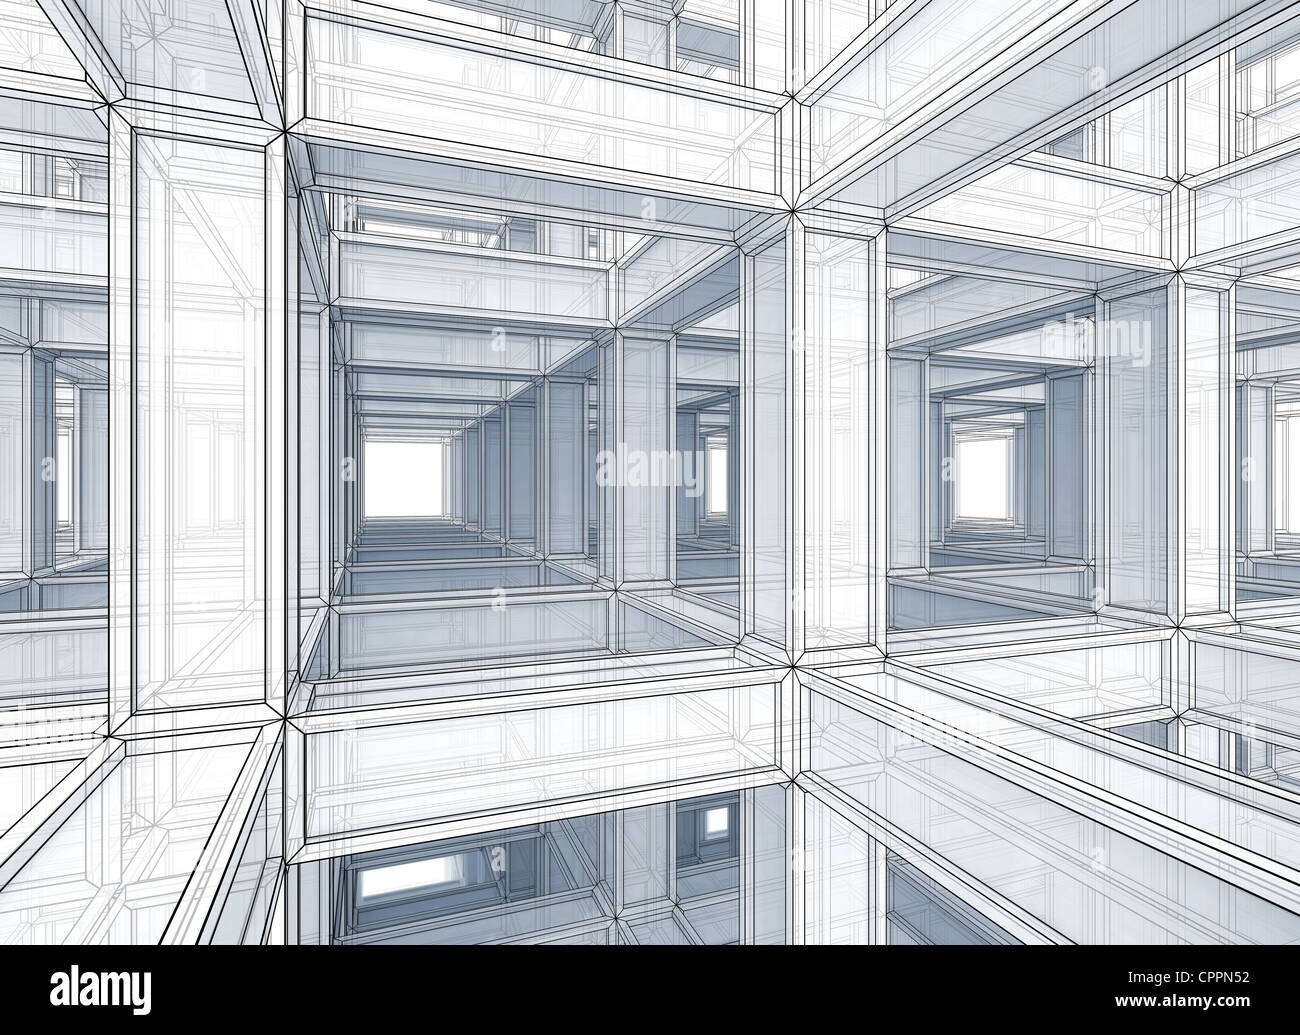 Abstrakt Architektur Perspektive getönten Hintergrund Umriss. Innenraum einer modernen verspannter Konstruktion Stockfoto